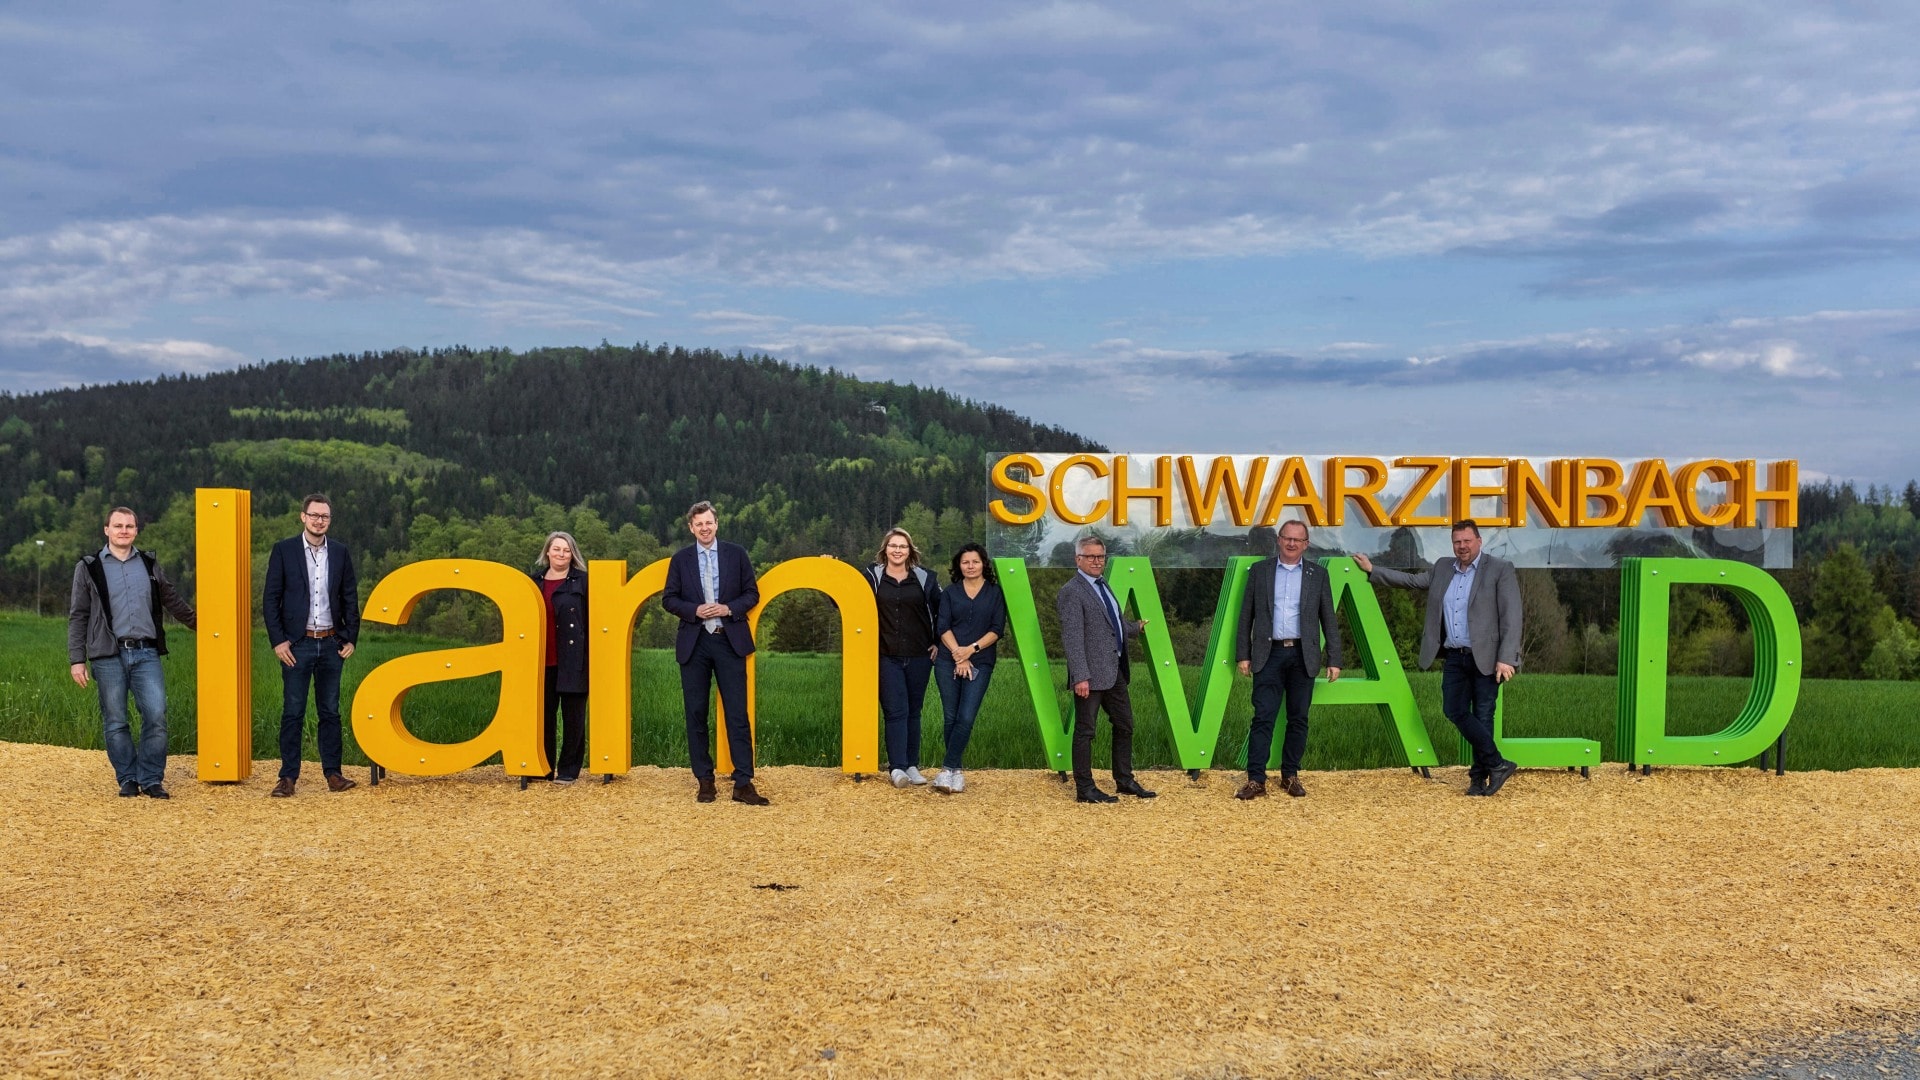 Zum Abschluss machte das Projektteam noch ein gemeinsames Foto am neuen Schwarzenbach am Wald Sign.